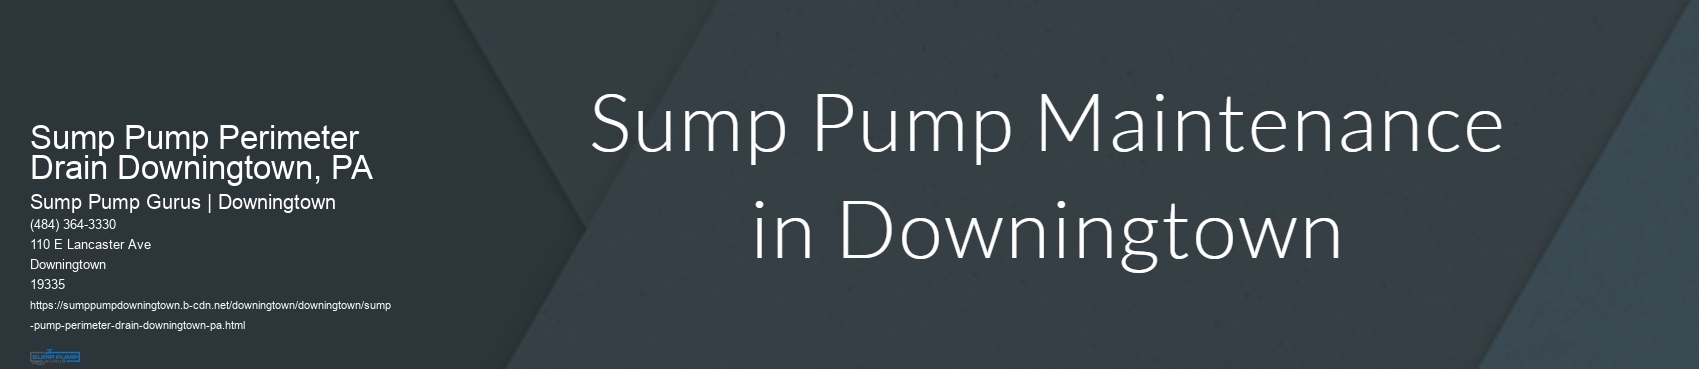 Sump Pump Perimeter Drain Downingtown, PA